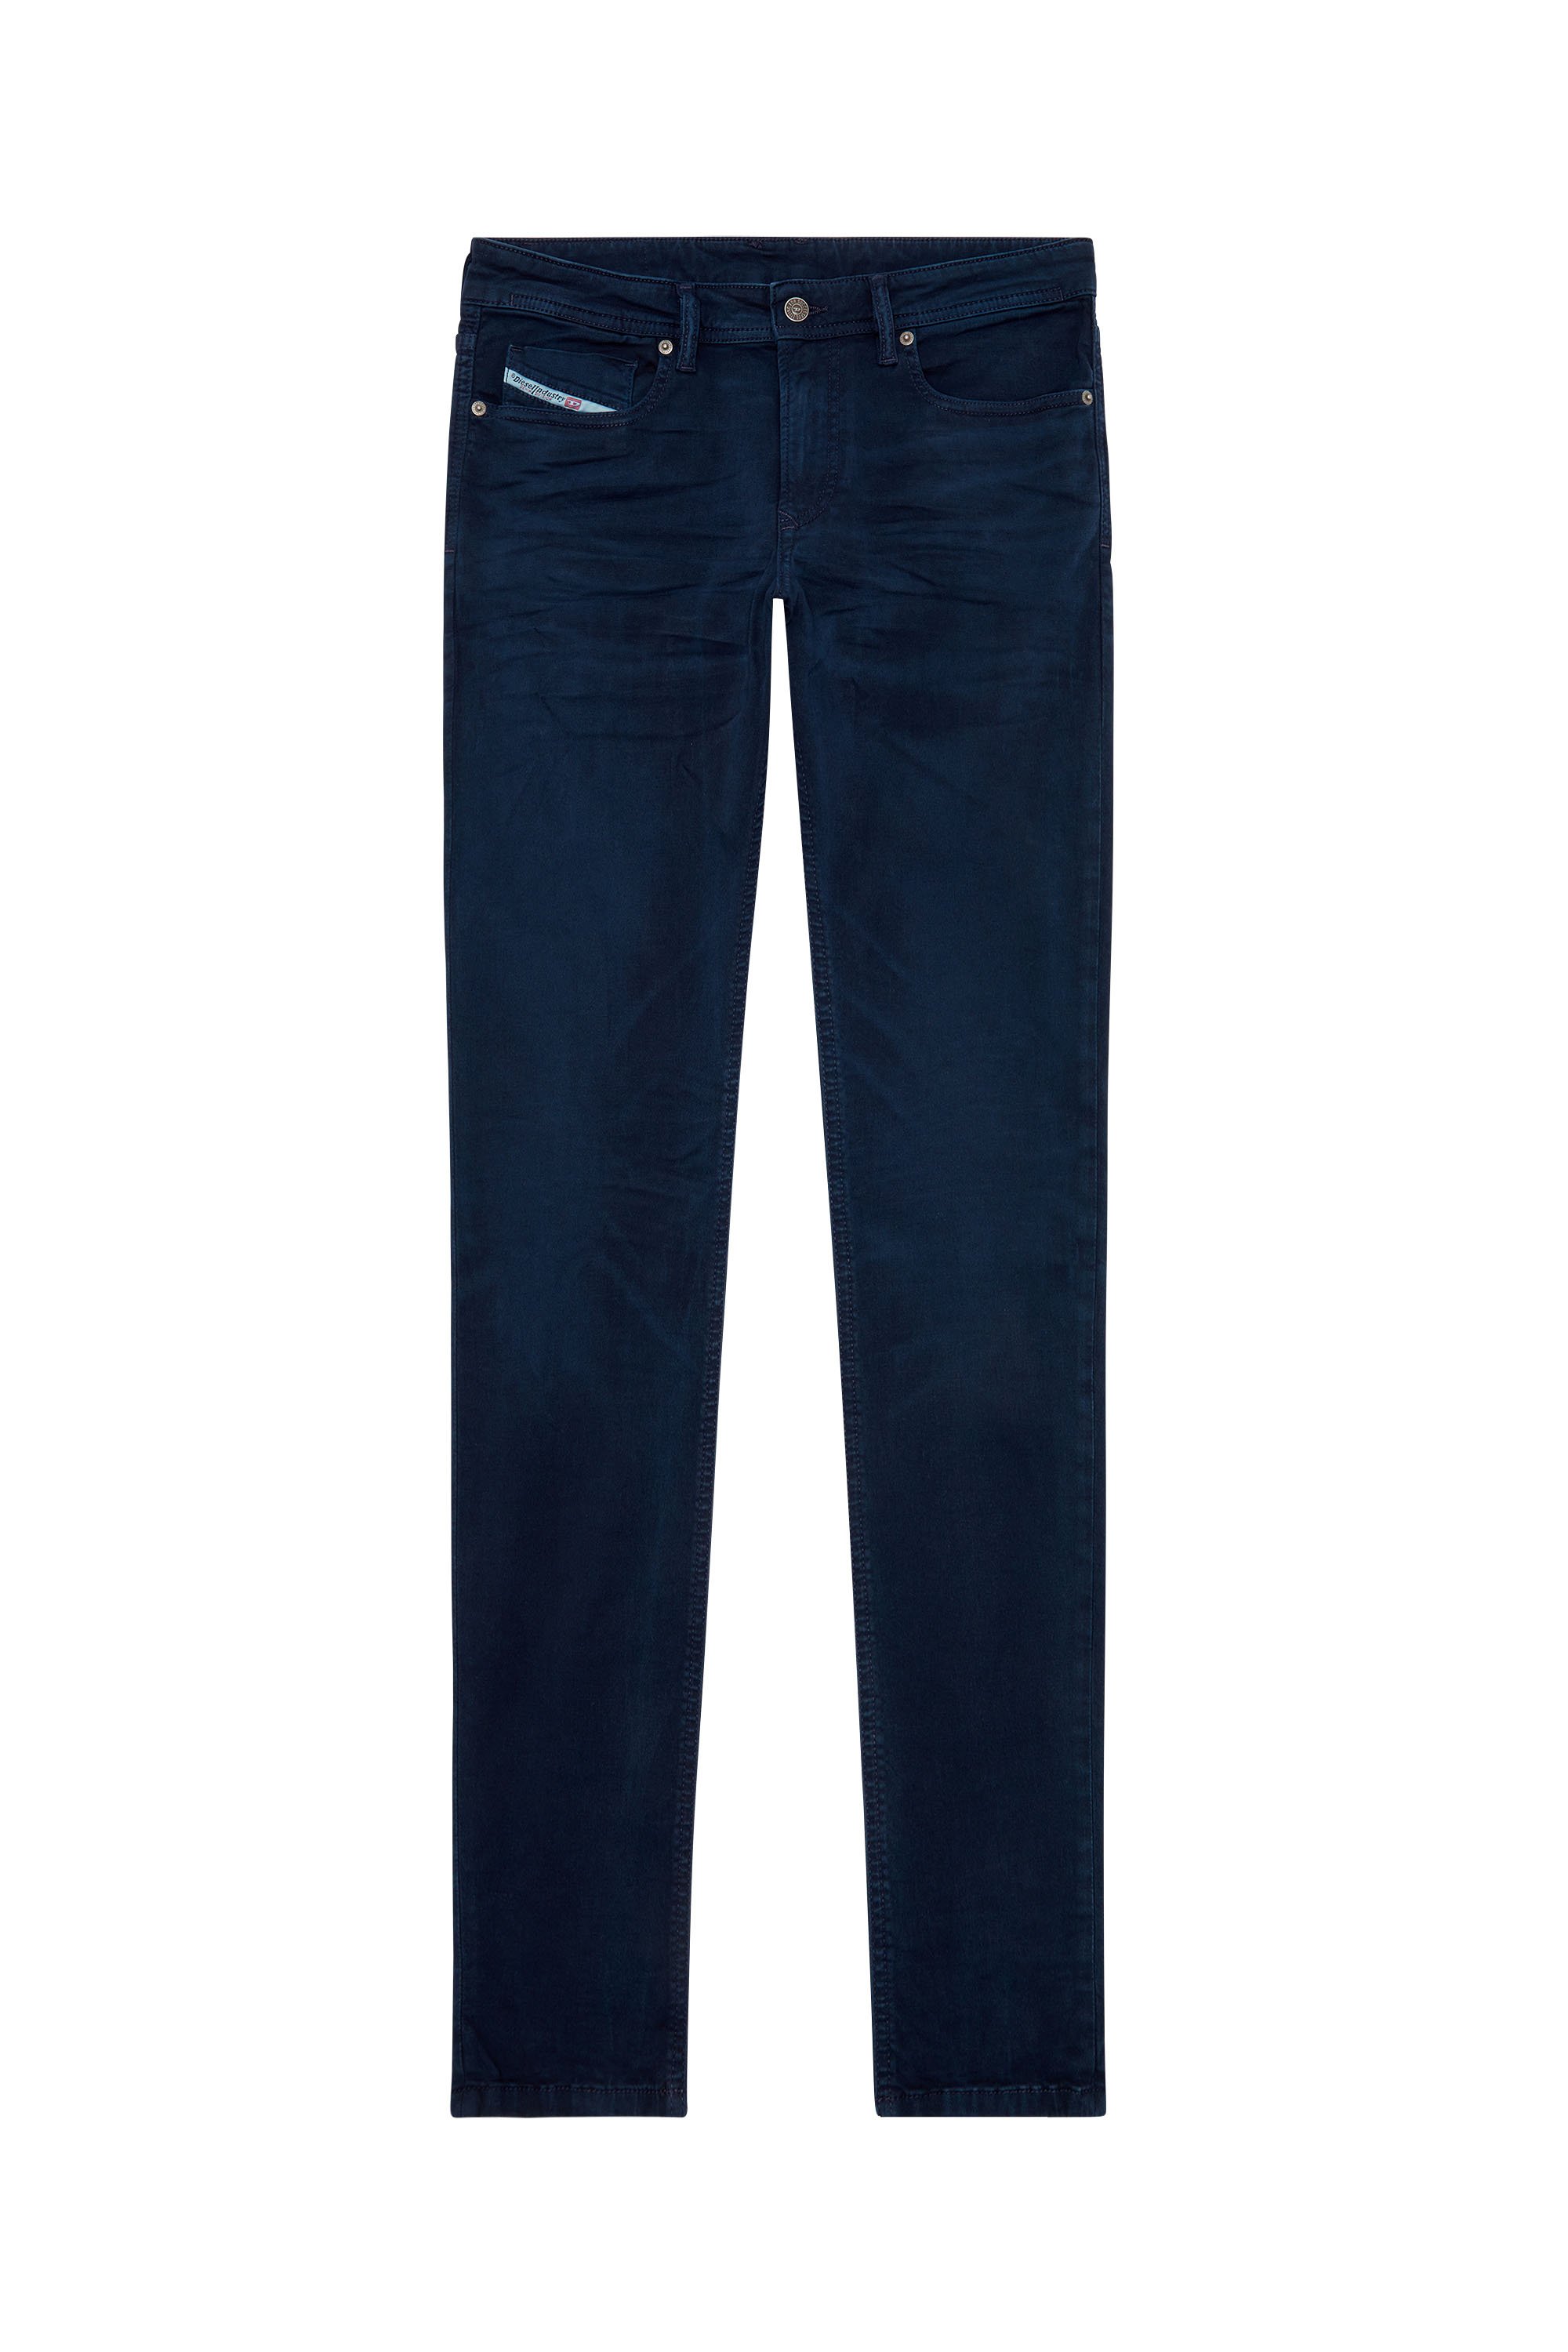 Diesel - Skinny Jeans 1979 Sleenker 0ENAK, Dark Blue - Image 5